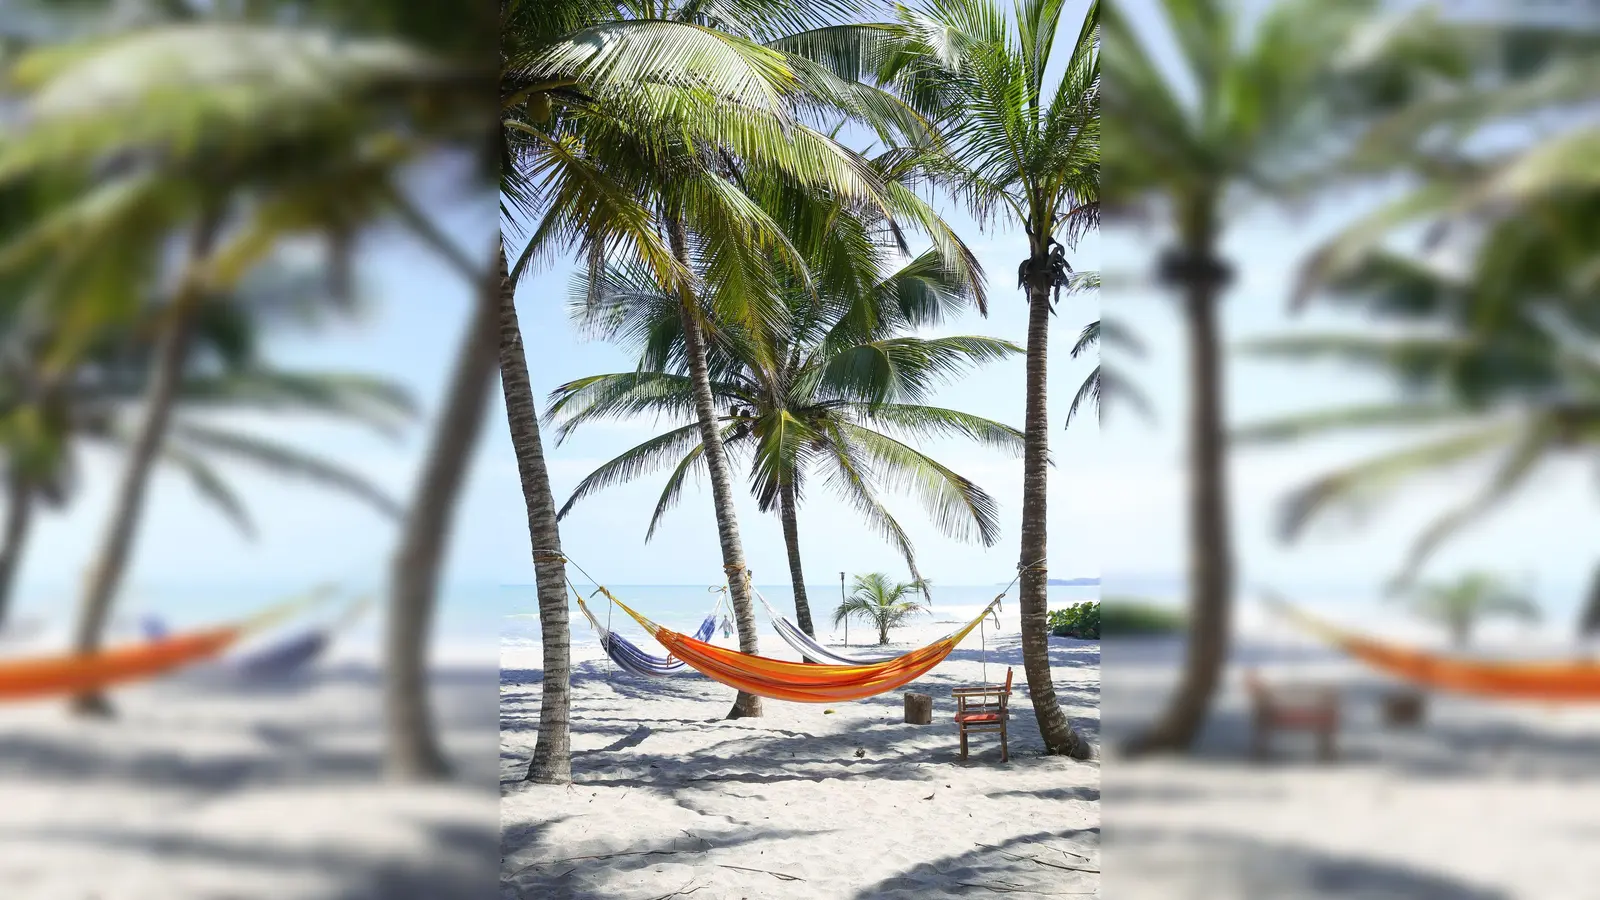 Wochenlang unter Palmen entspannen: Wer unbezahlten Urlaub möchte, ist auf das Einverständnis des Arbeitgebers angewiesen. (Foto: Catherine Waibel/dpa-tmn)